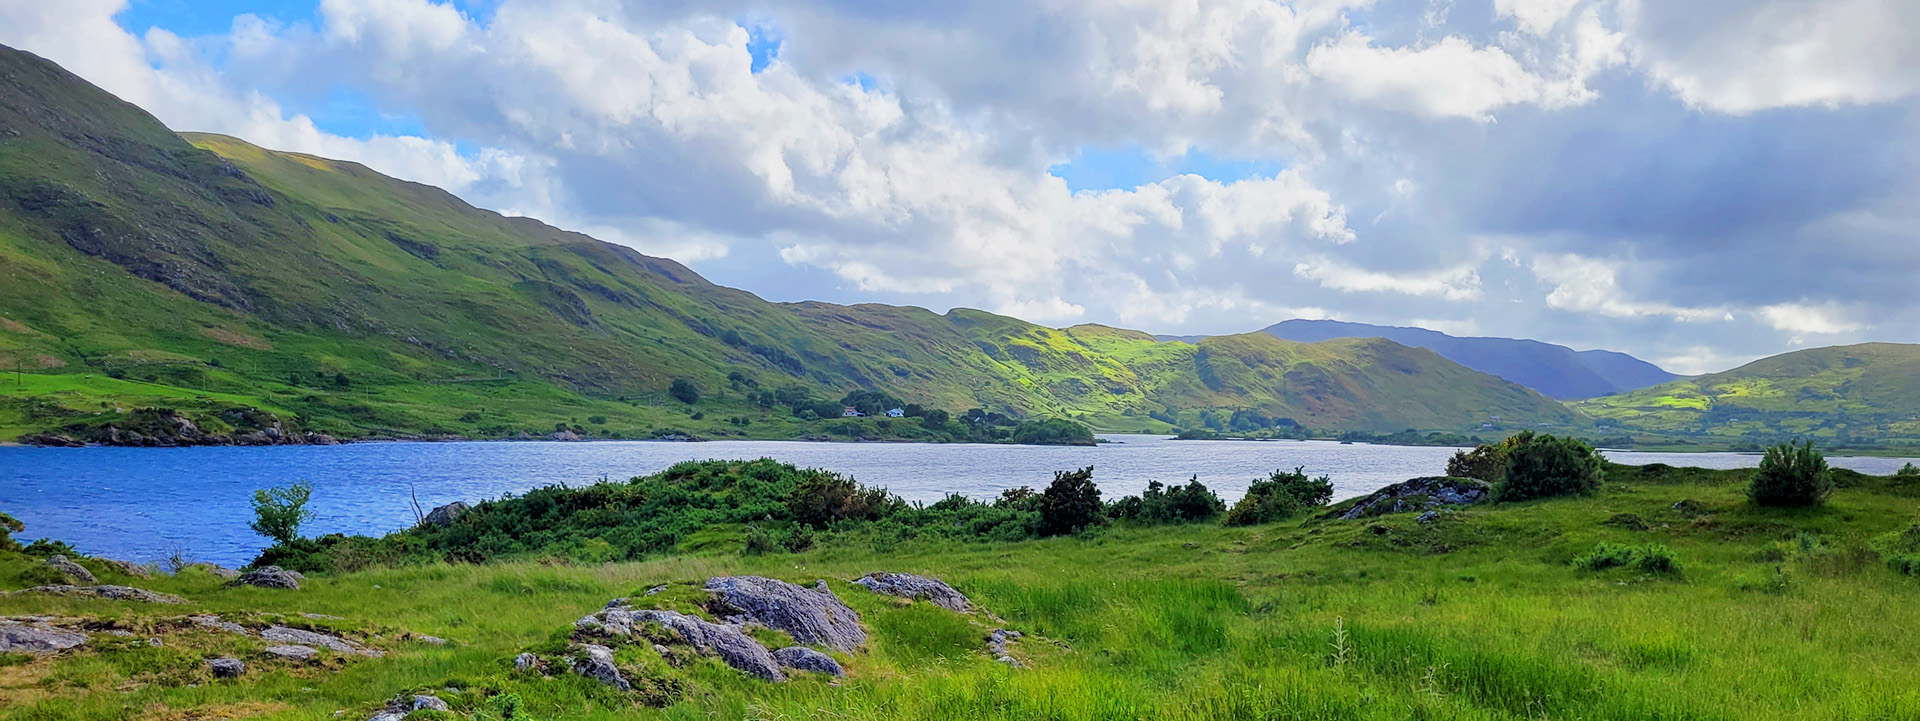 Ein Blick auf die idyllische Traumlandschaft des Lough Mask.